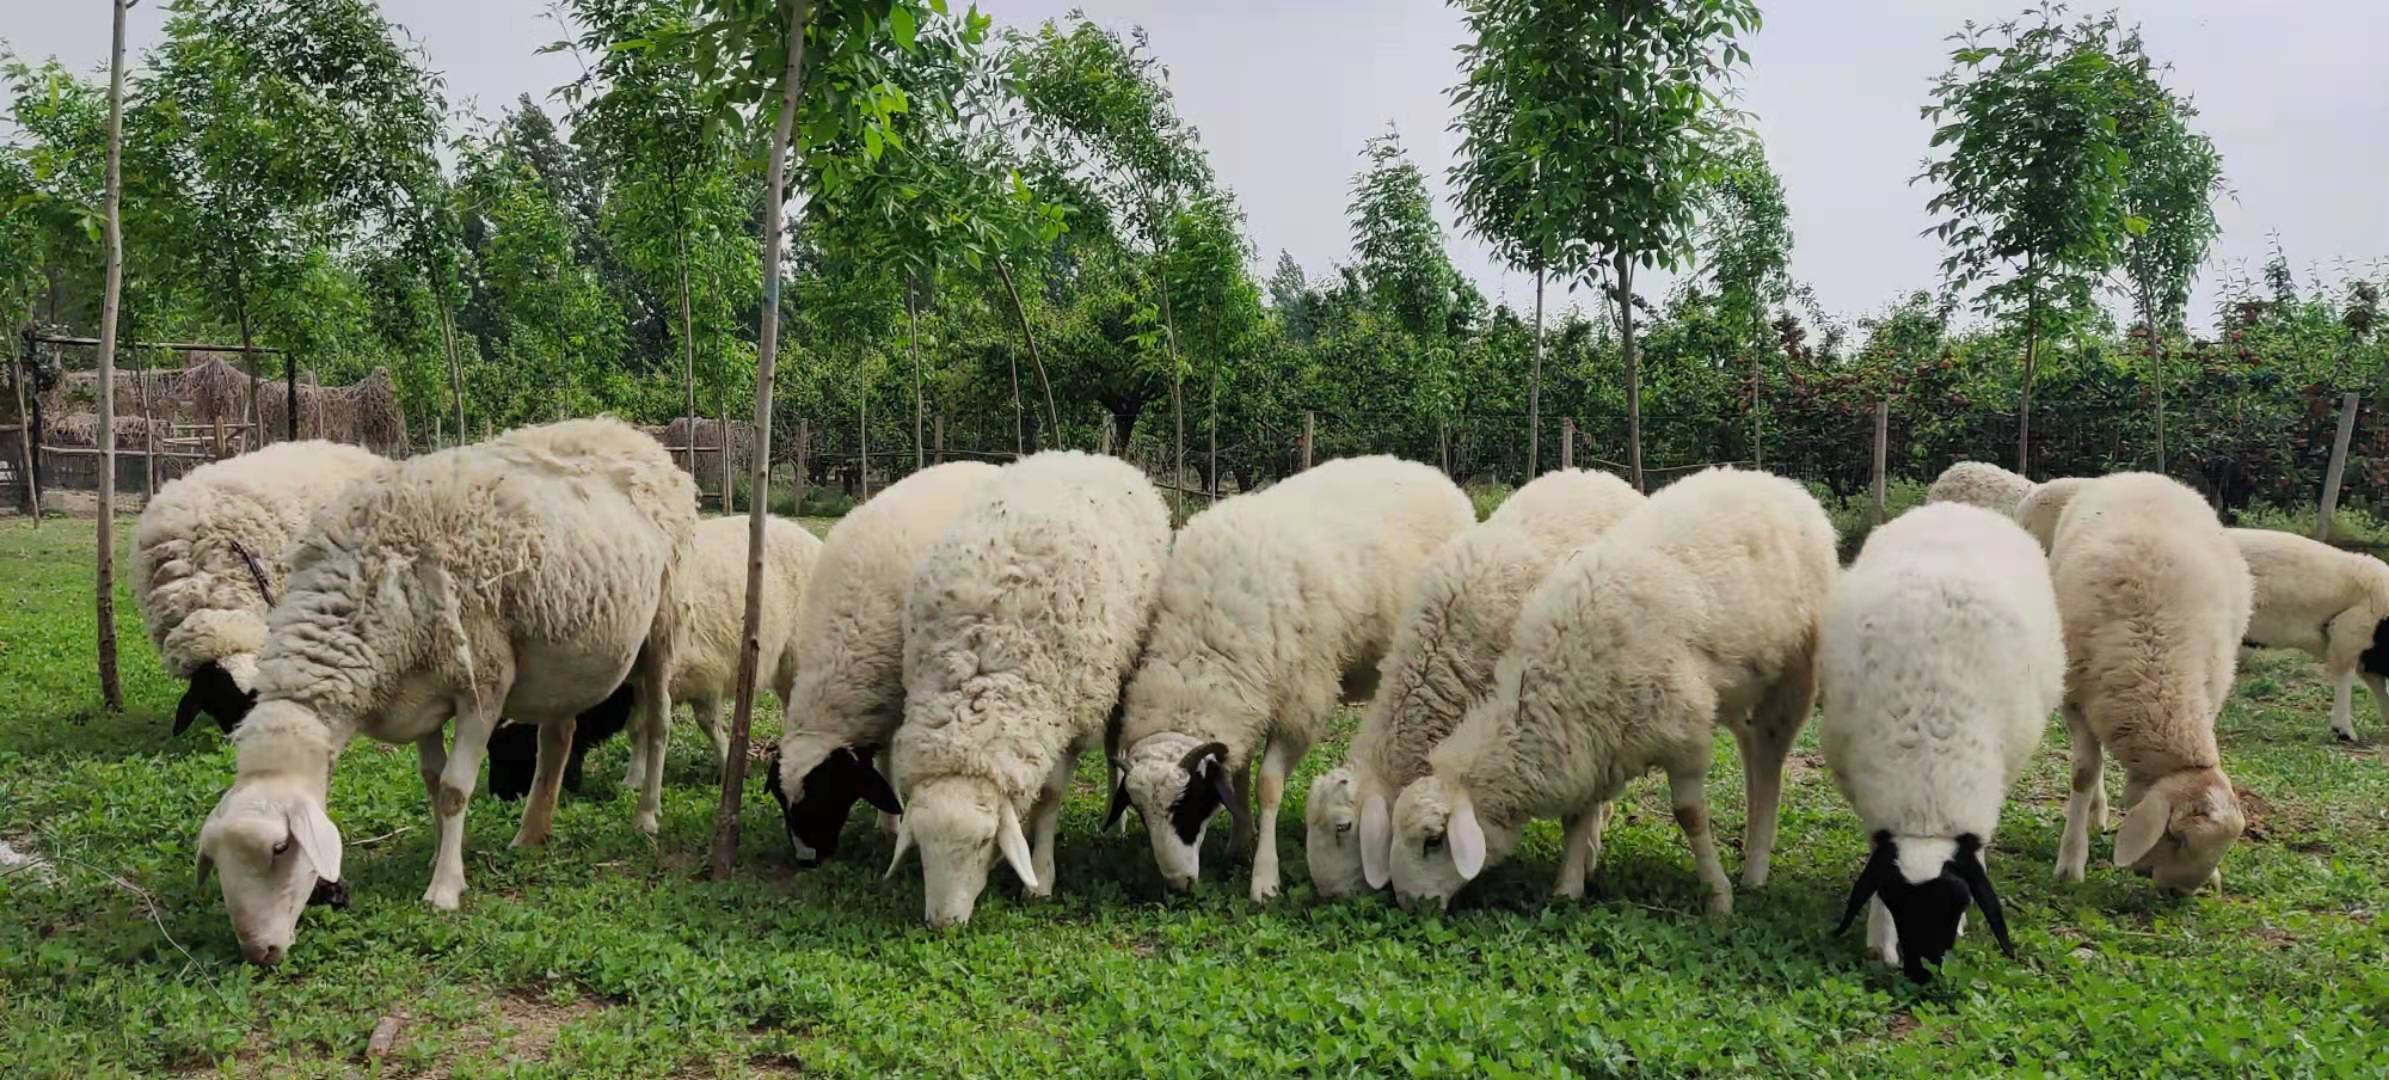 养羊到底怎么样,养多少羊可以年收入10万元呢?